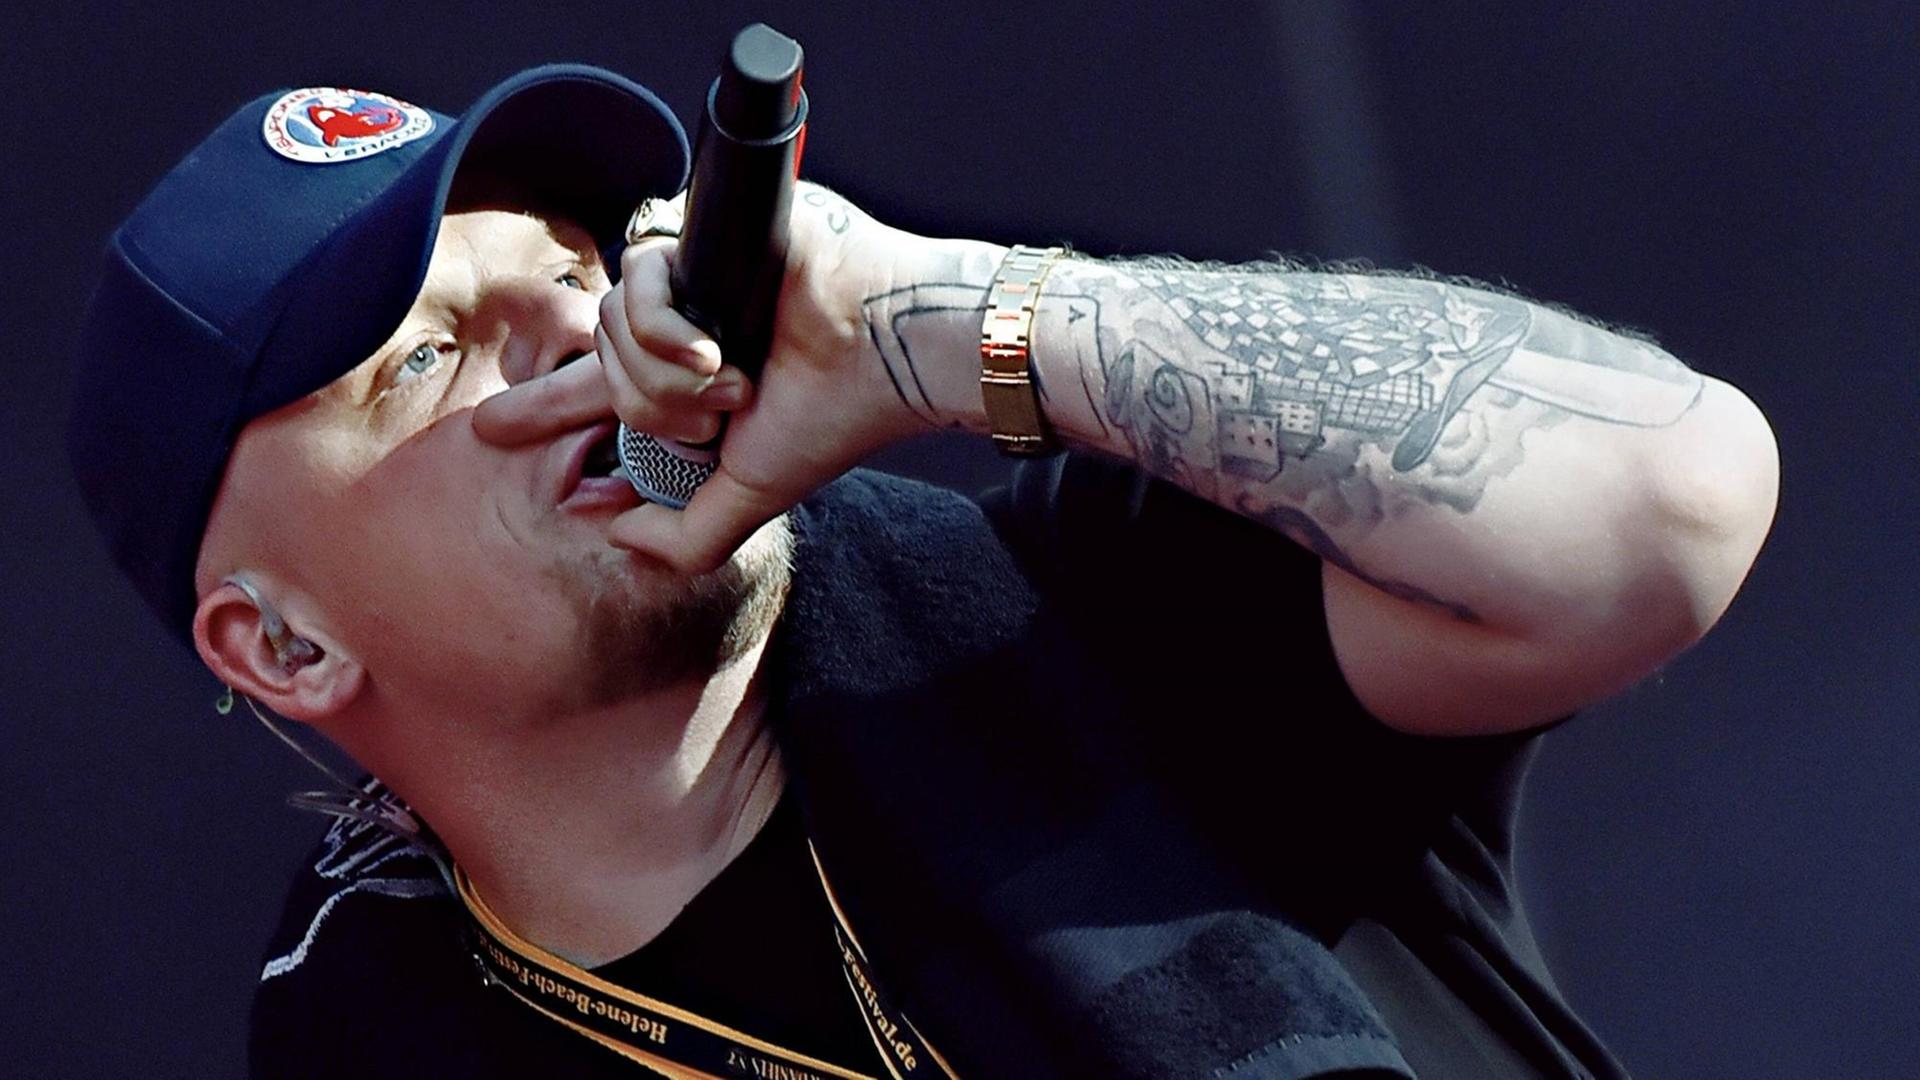 Der Hamburger Rapper Bonez MC steht auf einer Bühne und singt, er hält in der linken Hand ein Mikrofon.